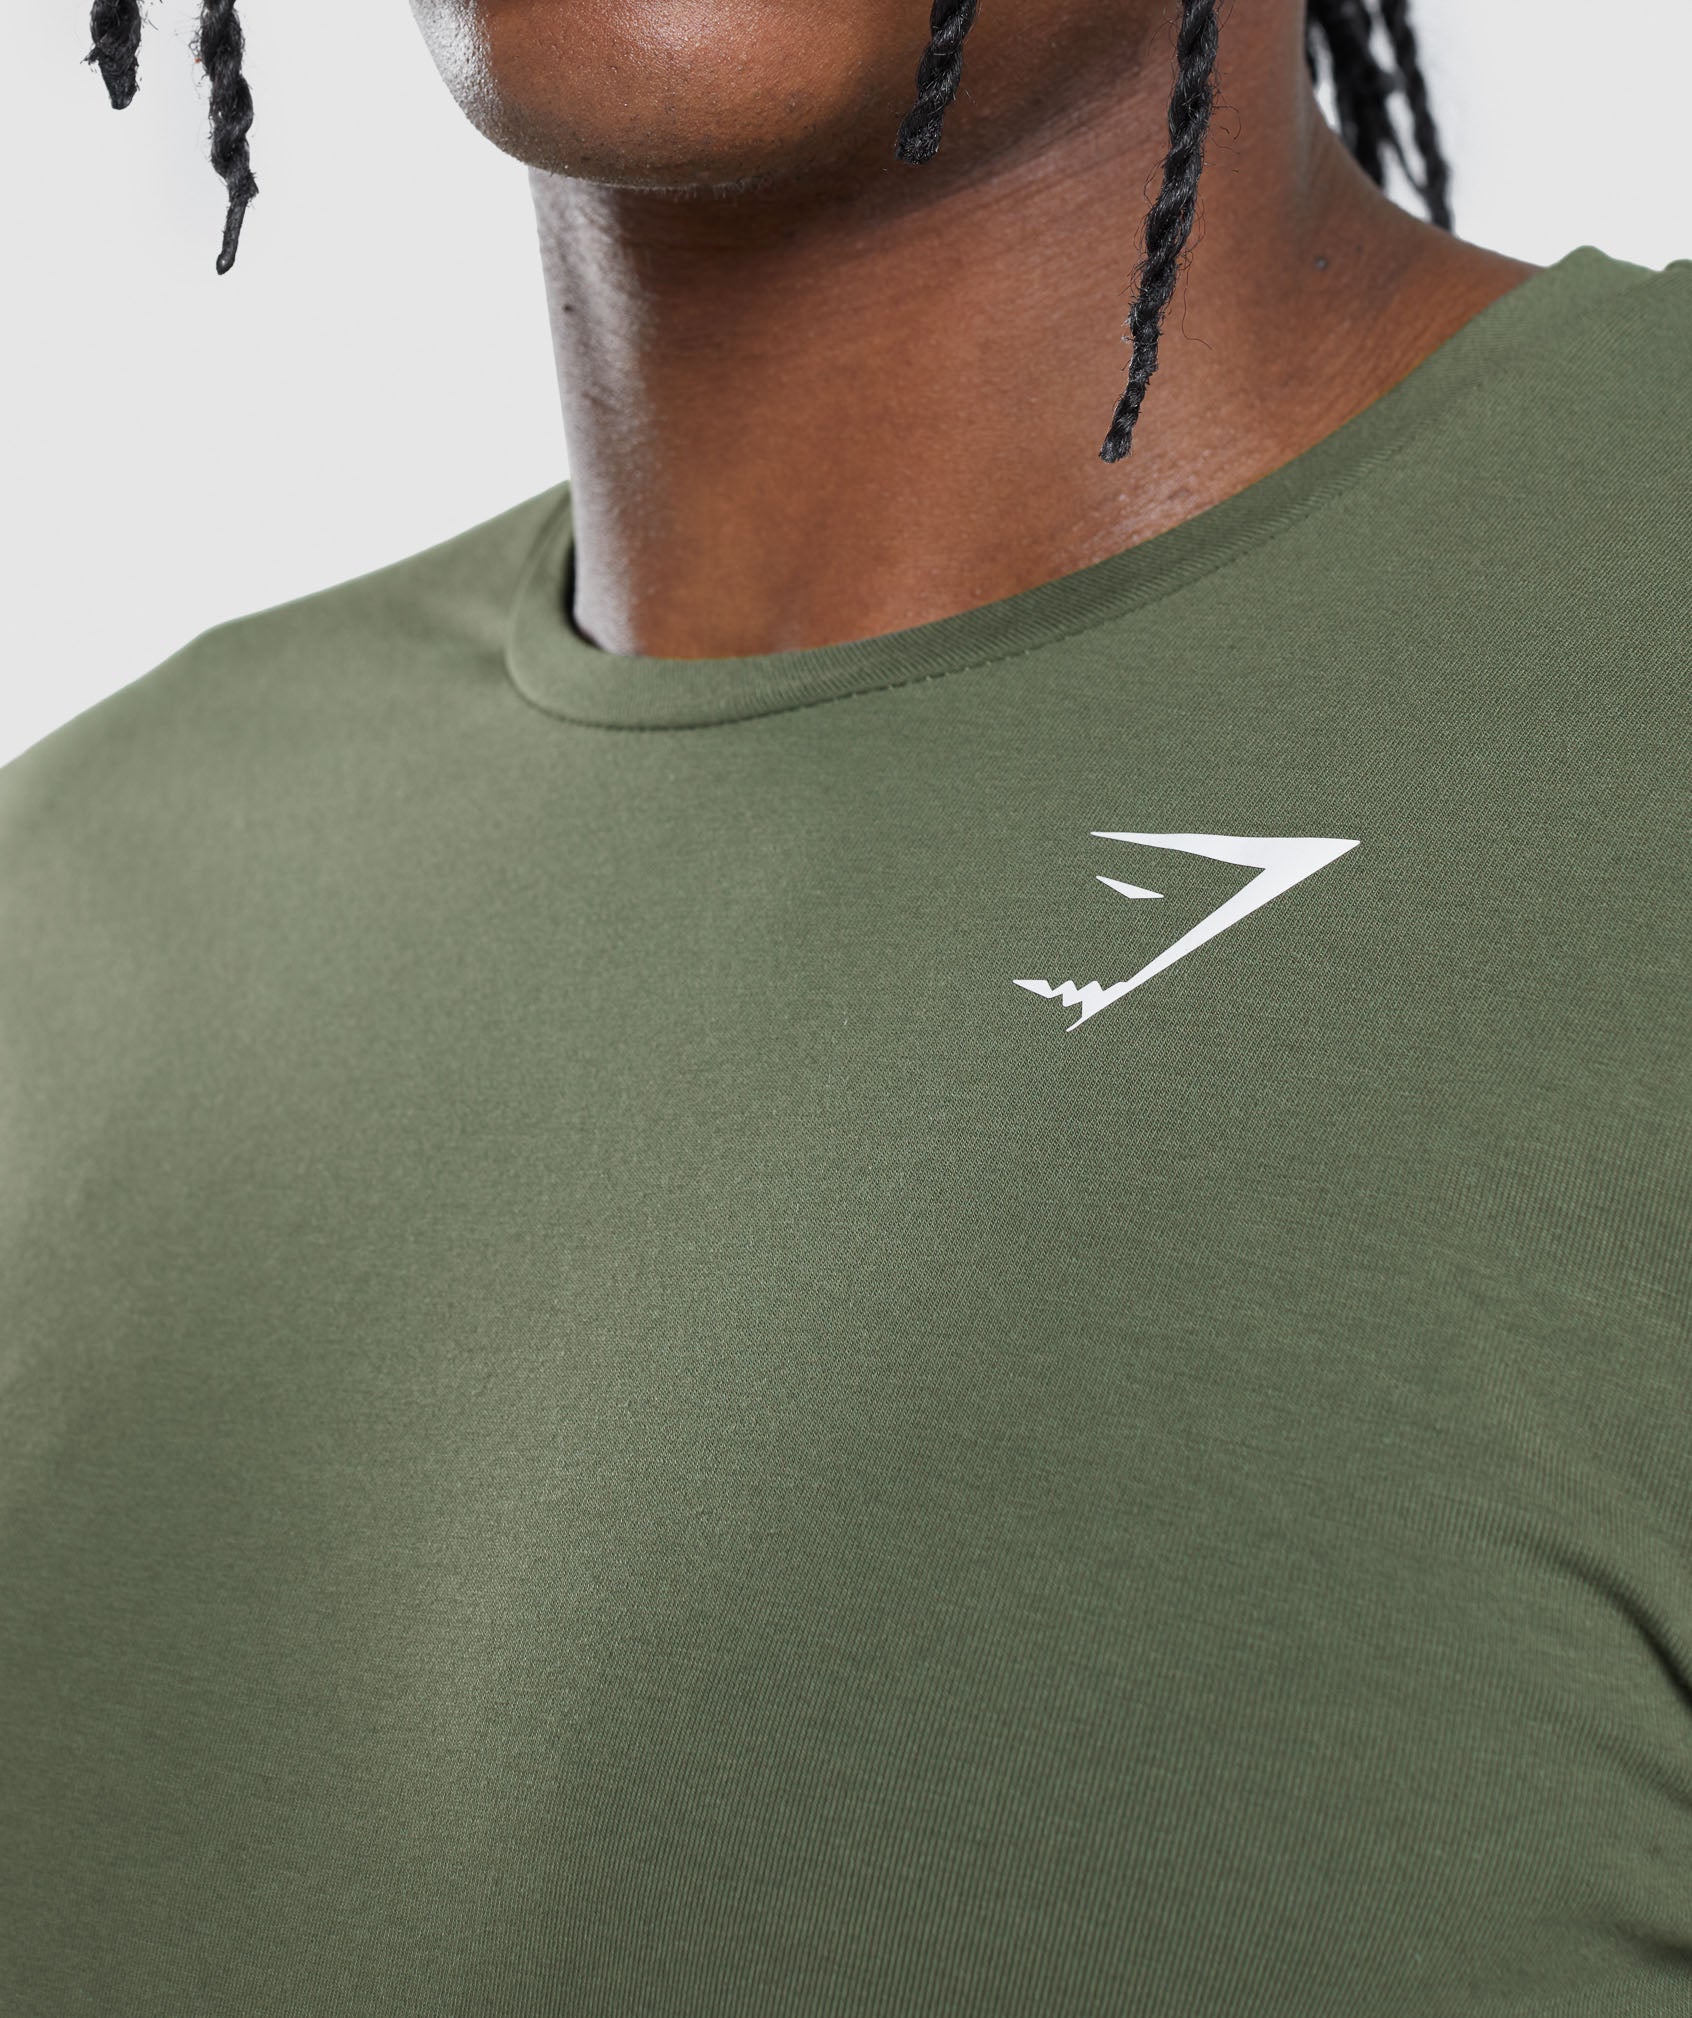 Gymshark Critical T-Shirt - Green - Medium 